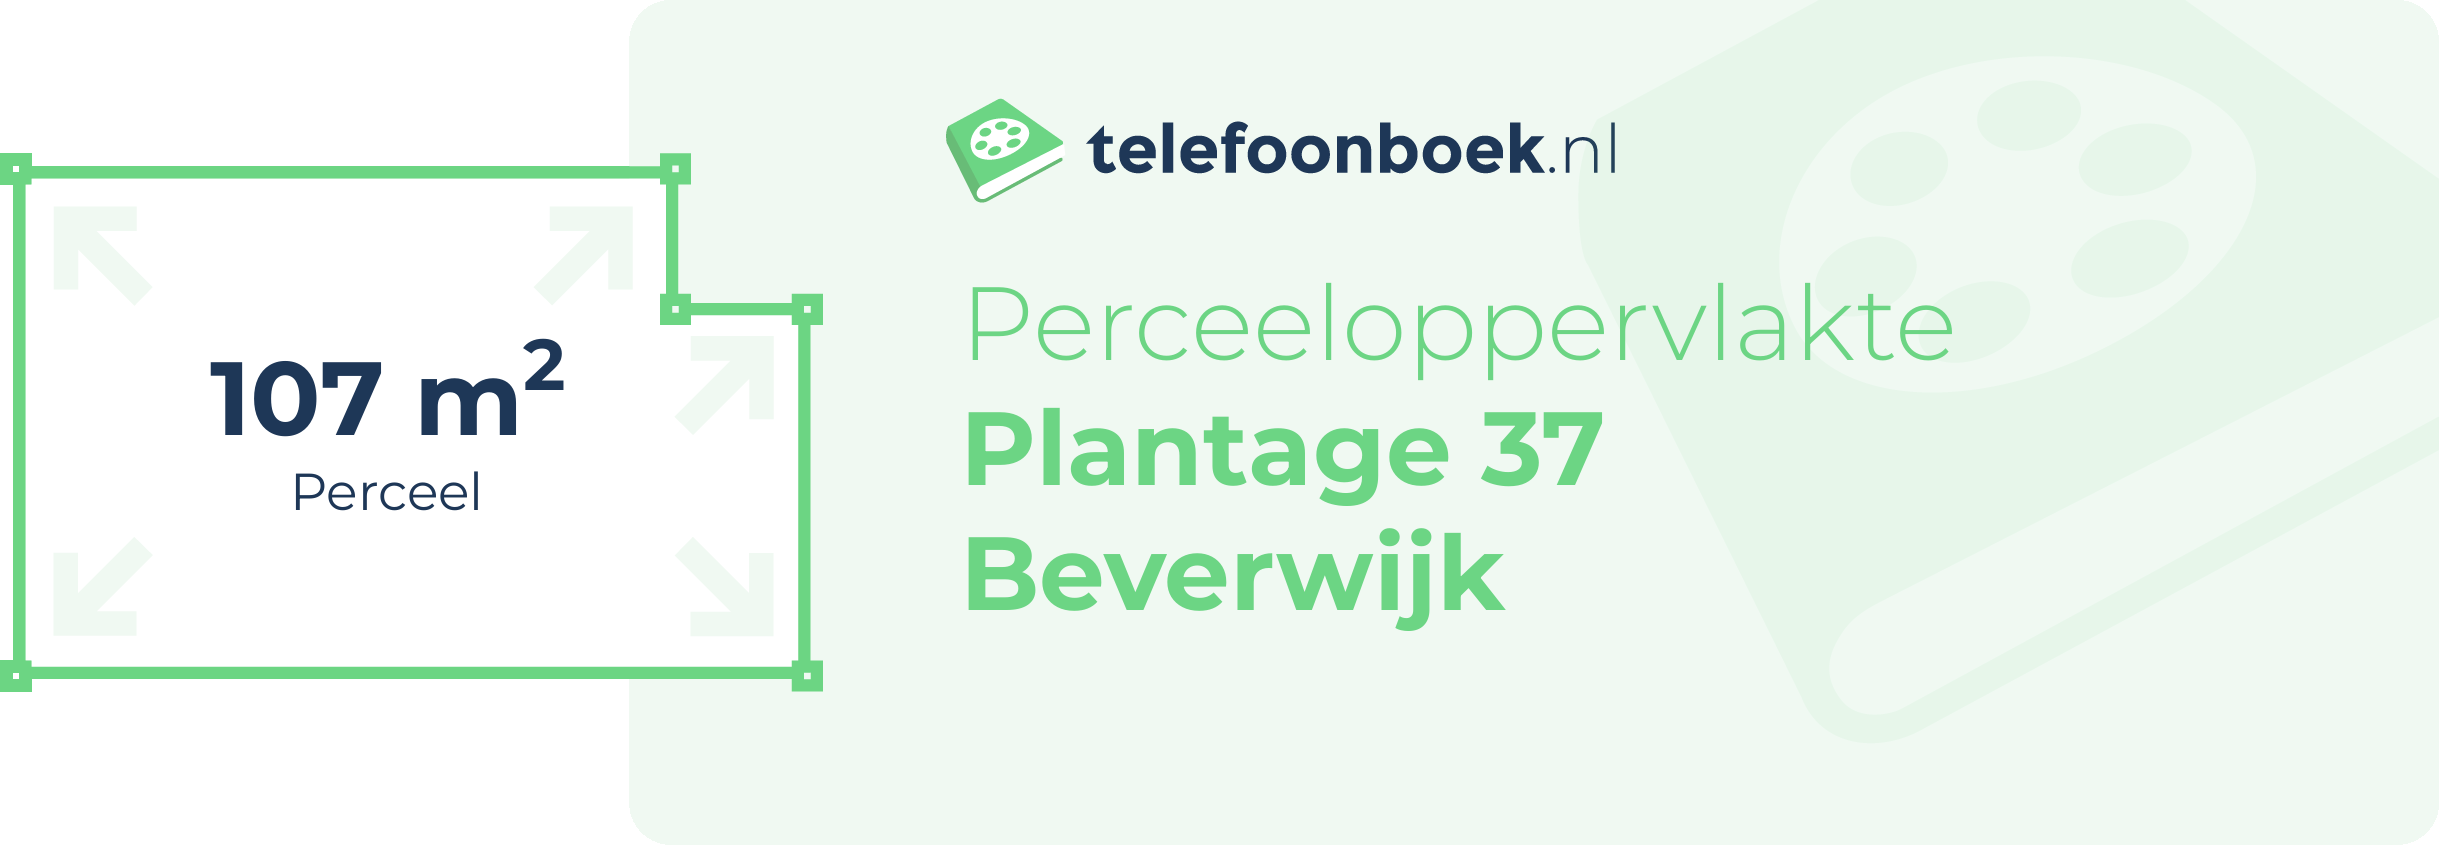 Perceeloppervlakte Plantage 37 Beverwijk